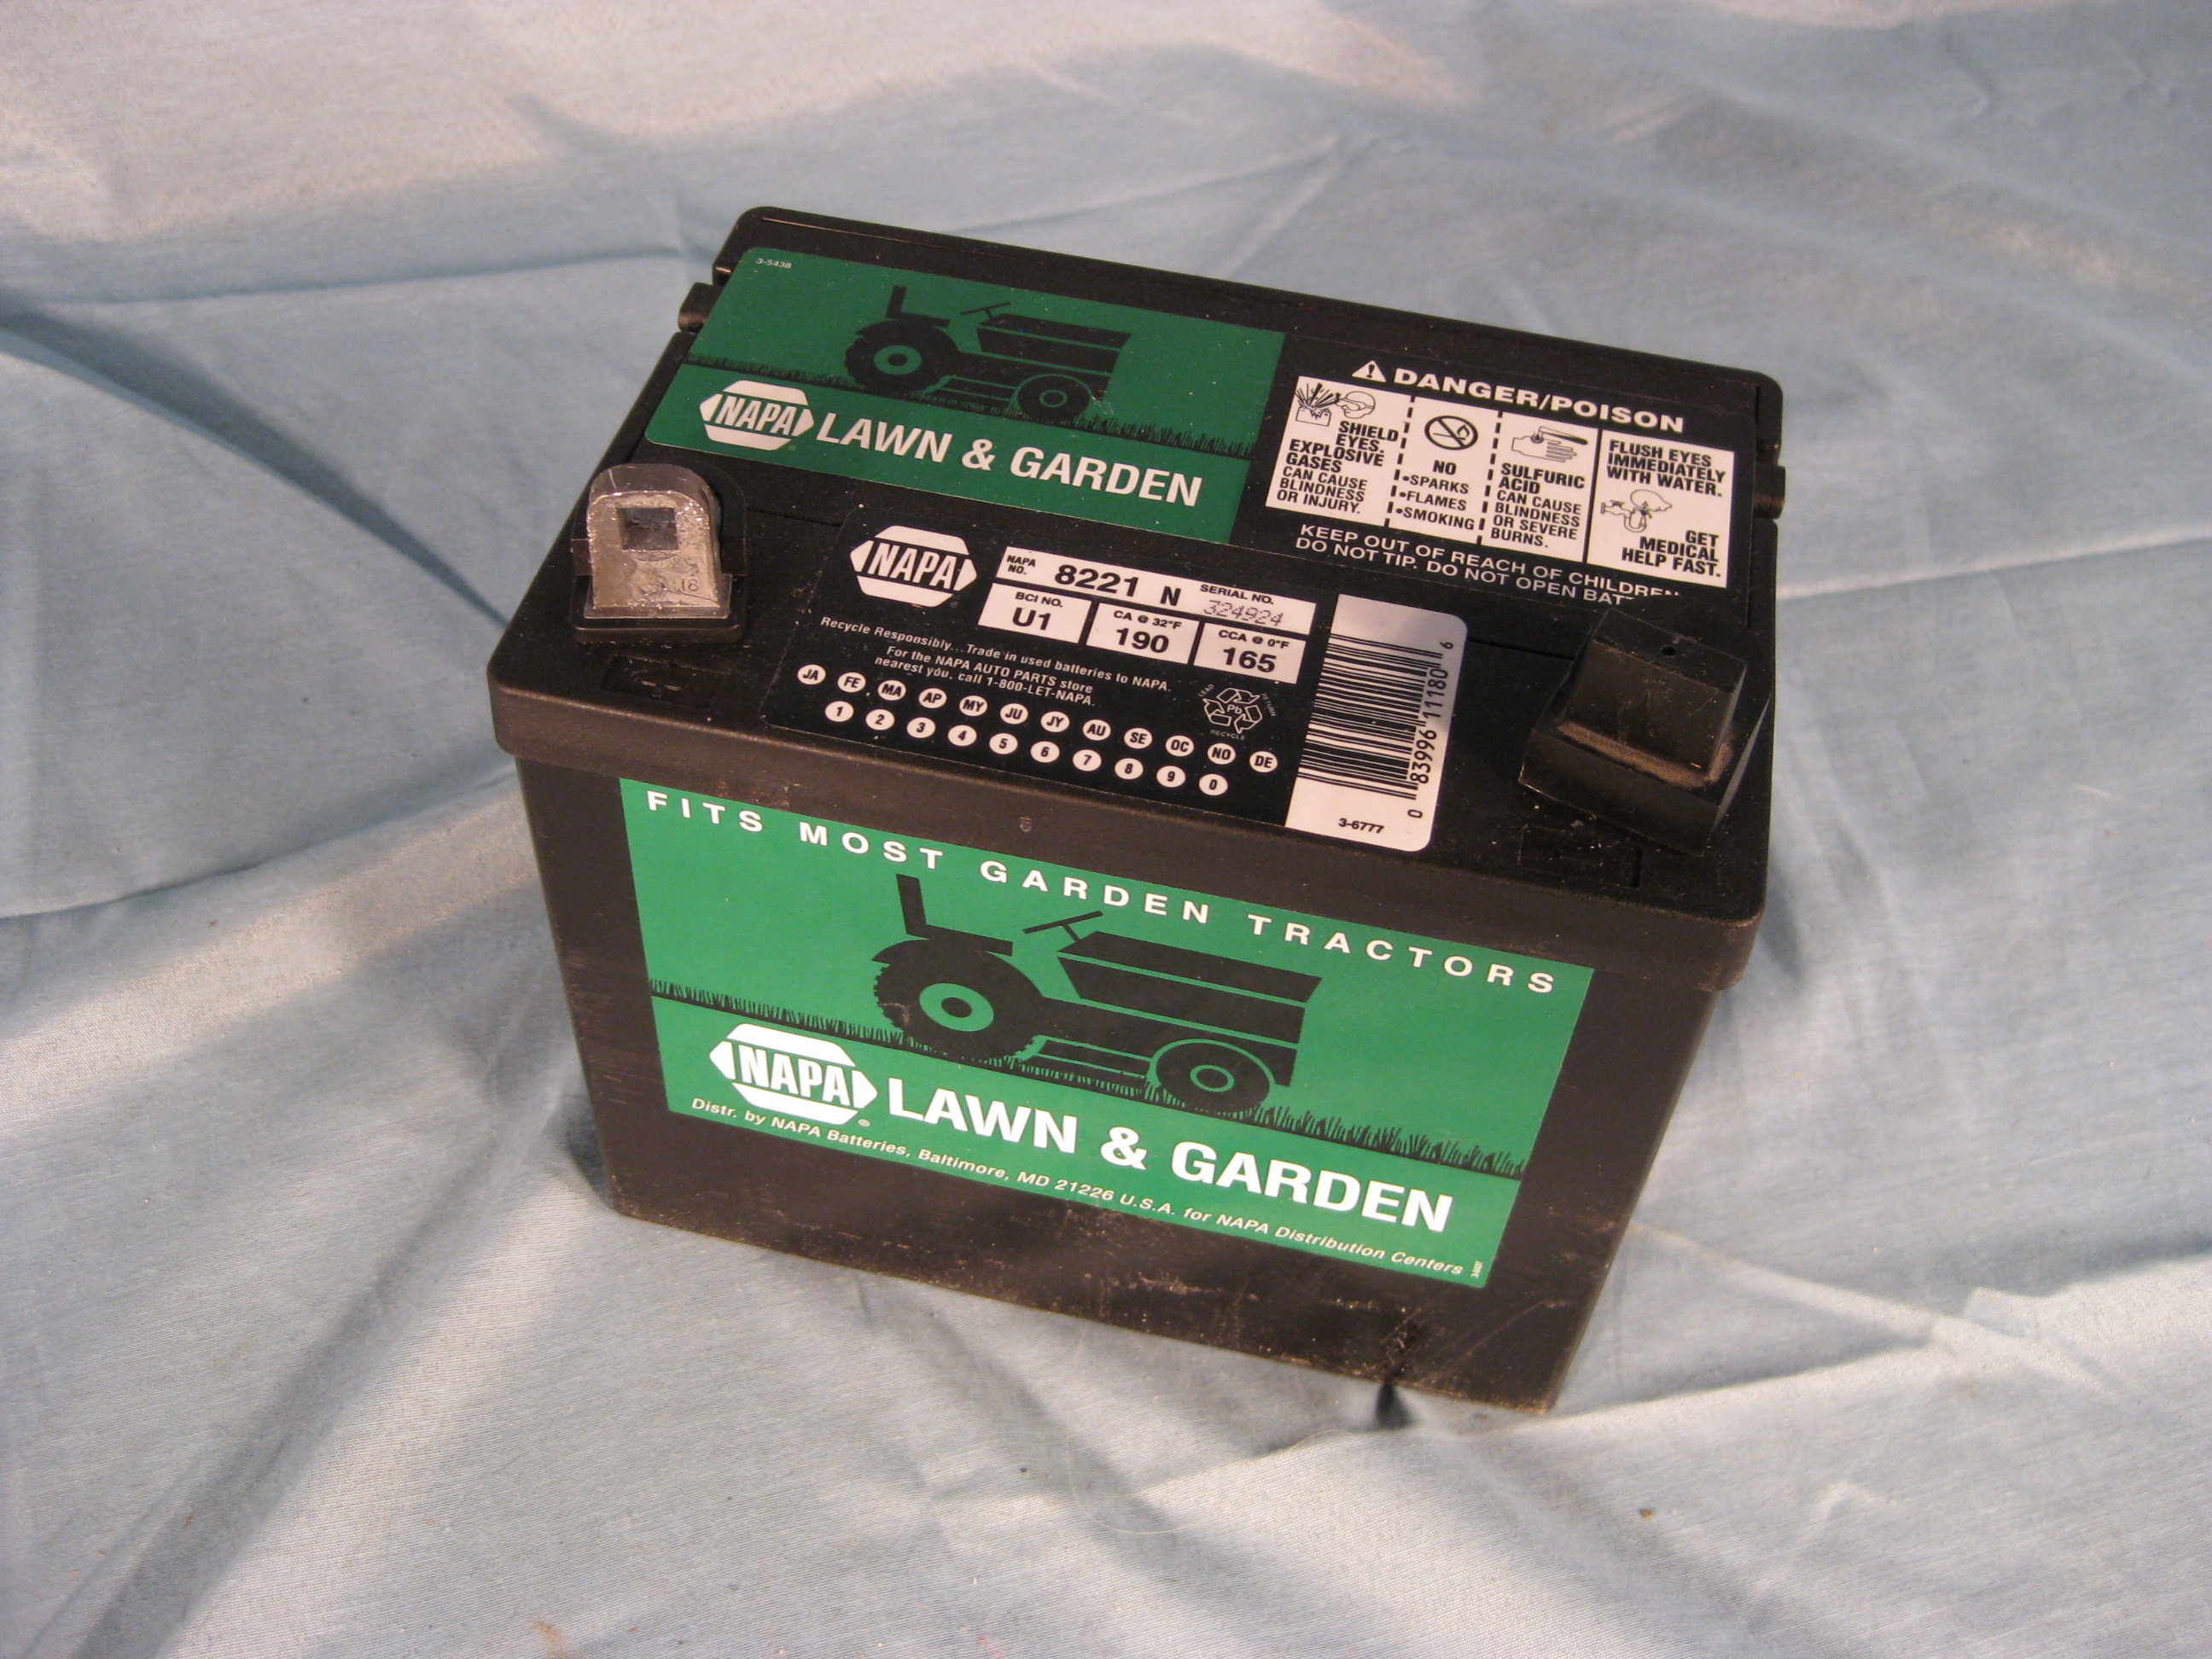 Lead Acid Storage Battery